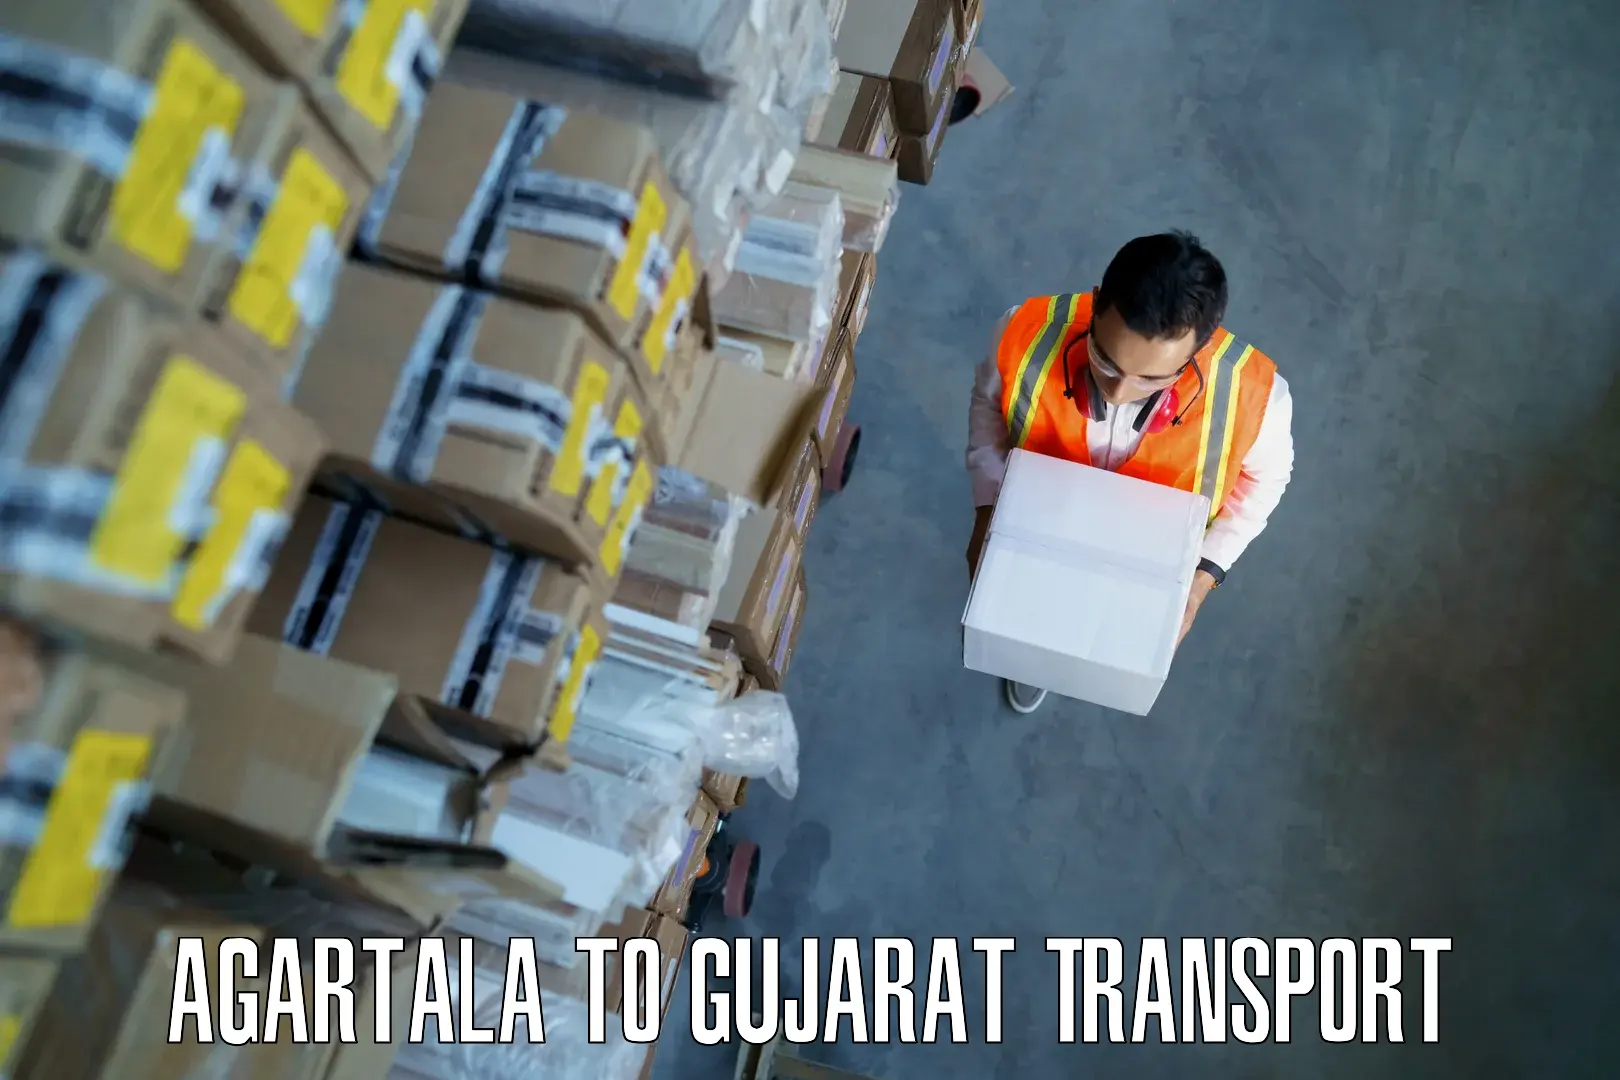 Vehicle parcel service Agartala to Mahuva